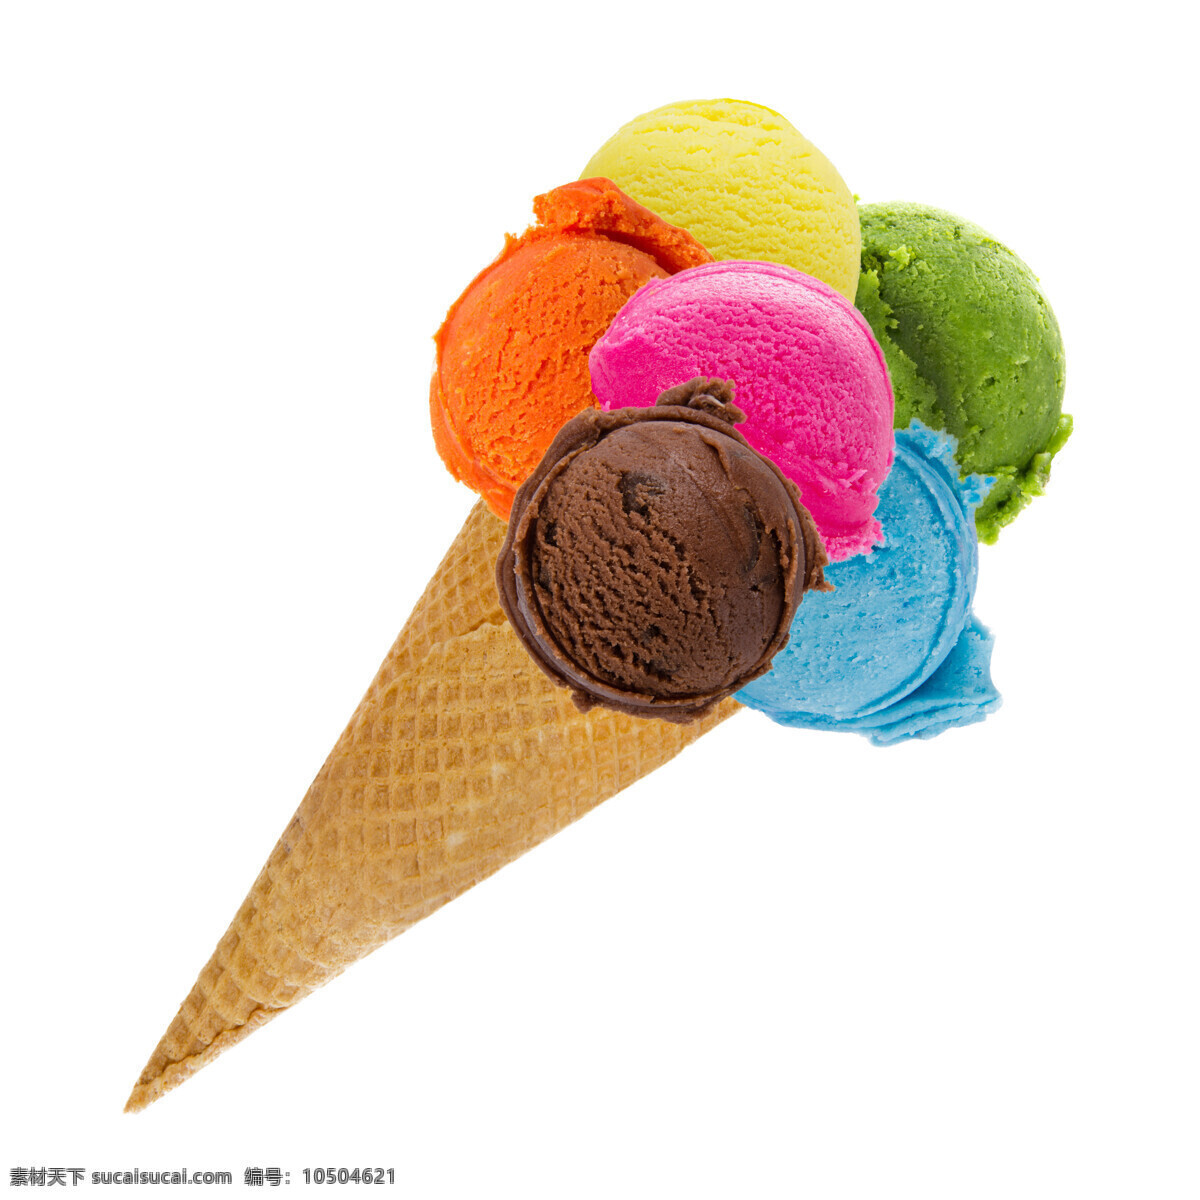 彩色 蛋卷 冰淇淋 水果味 巧克力 食物 冰点 美食图片 餐饮美食